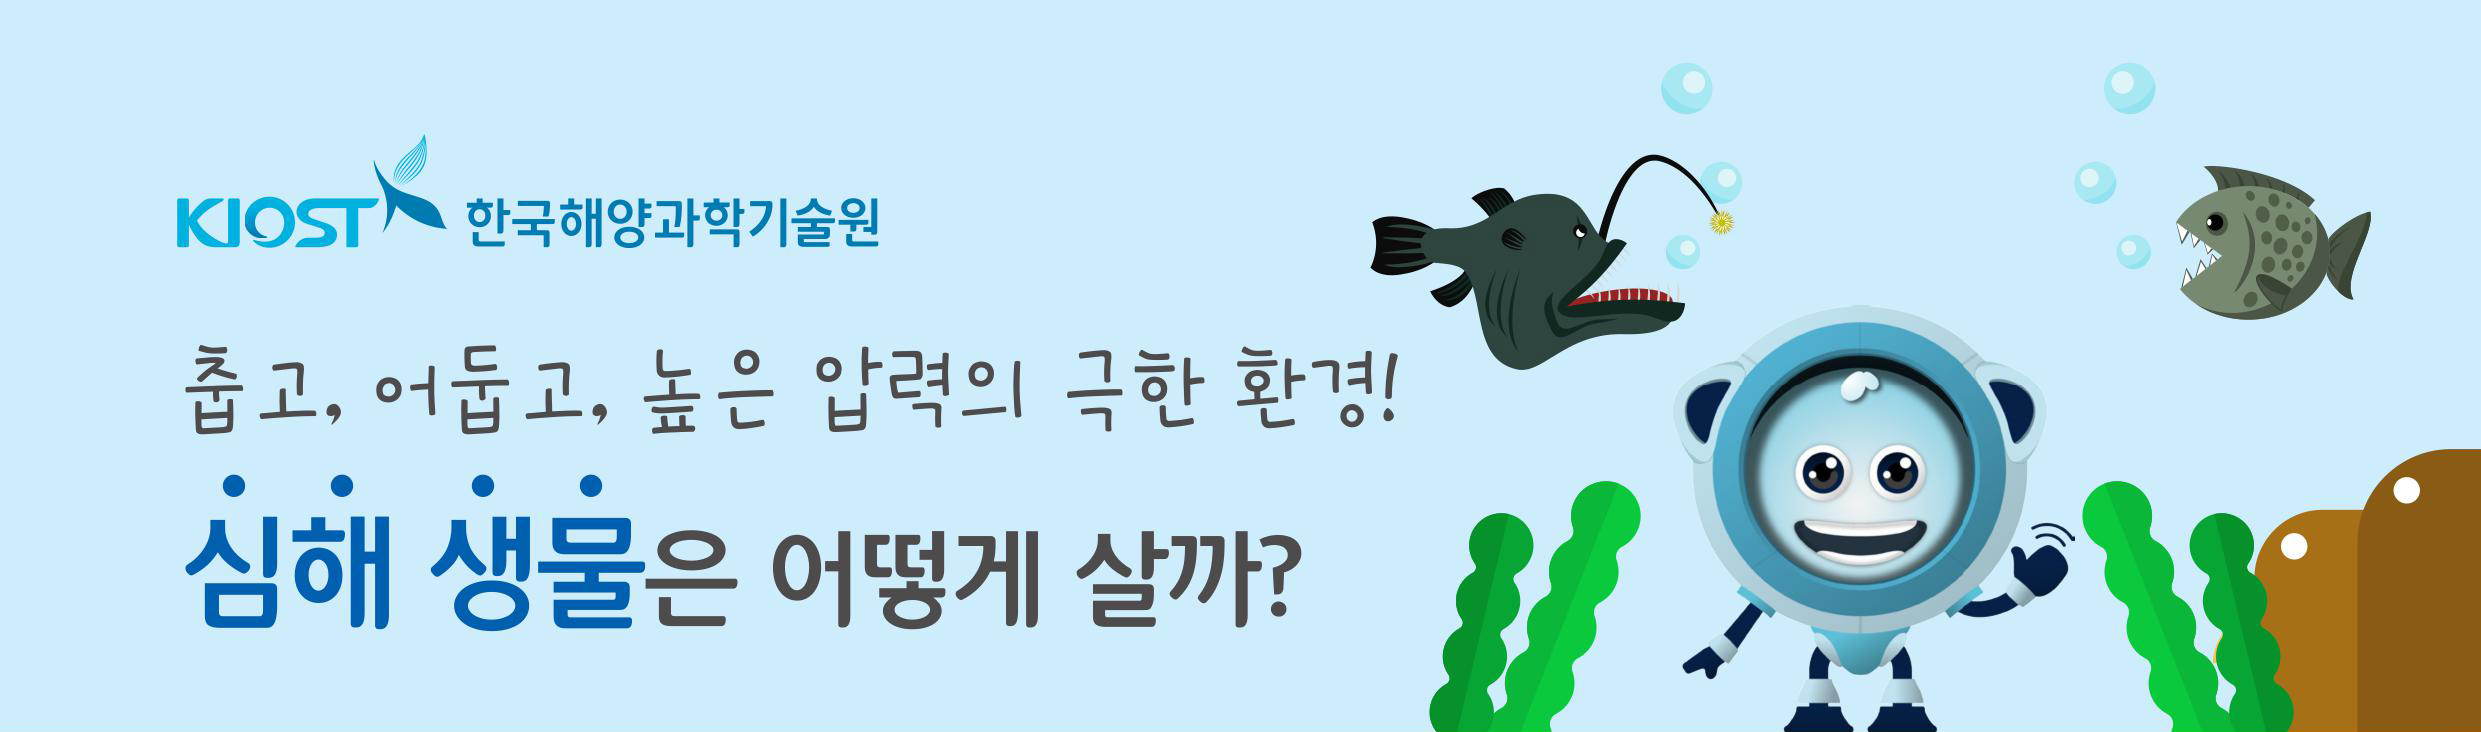 KIOST 한국해양과학기술원 춥고, 어둡고, 높은 압력의 극한 환경! 심해 생물 은 어떻게 살까?